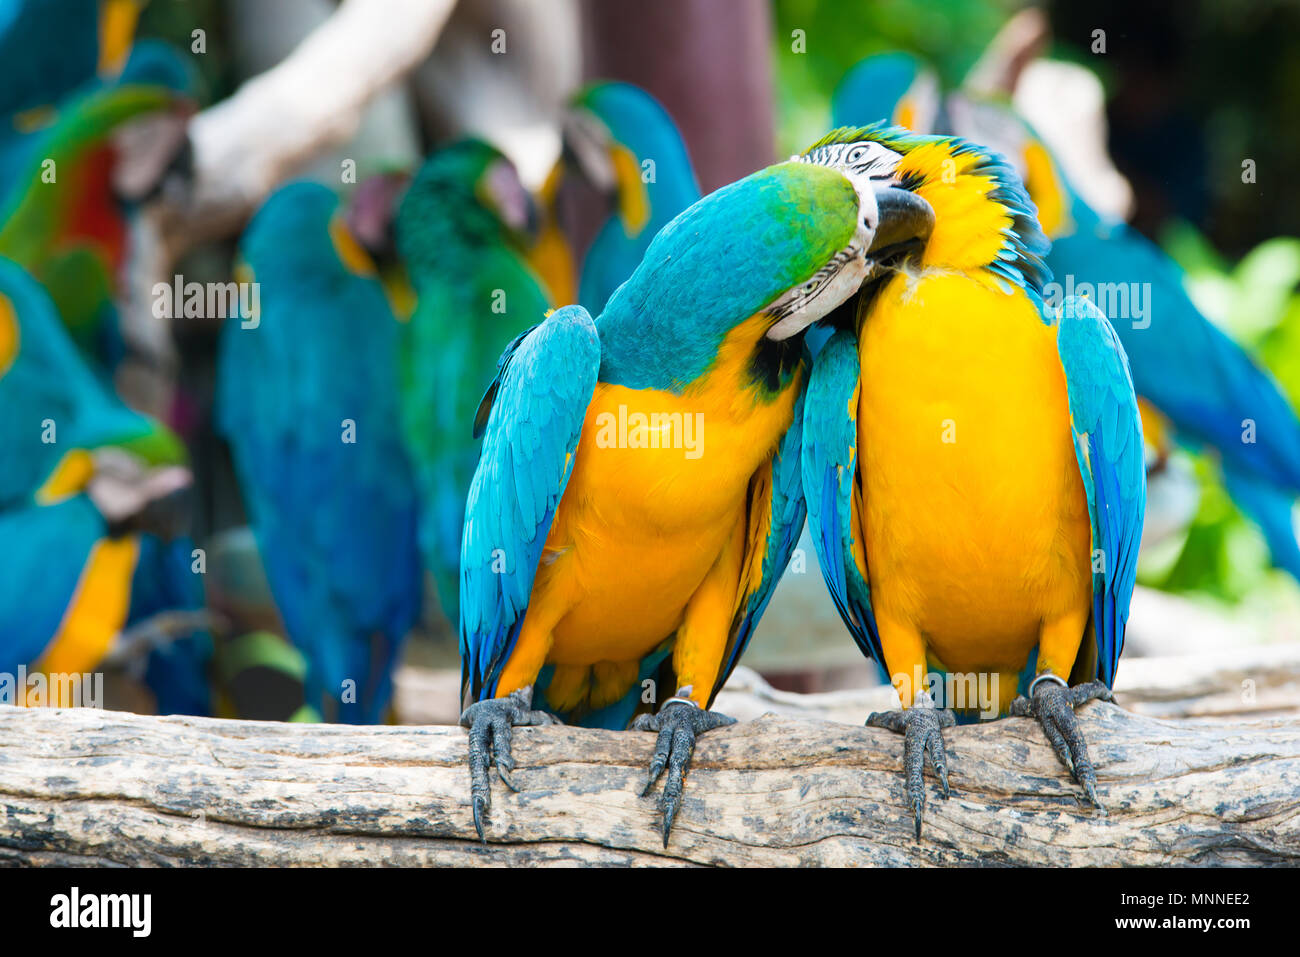 Une paire de bleu et jaune se percher sur la branche d'aras en bois dans la jungle. Ara coloré des oiseaux en forêt. Banque D'Images